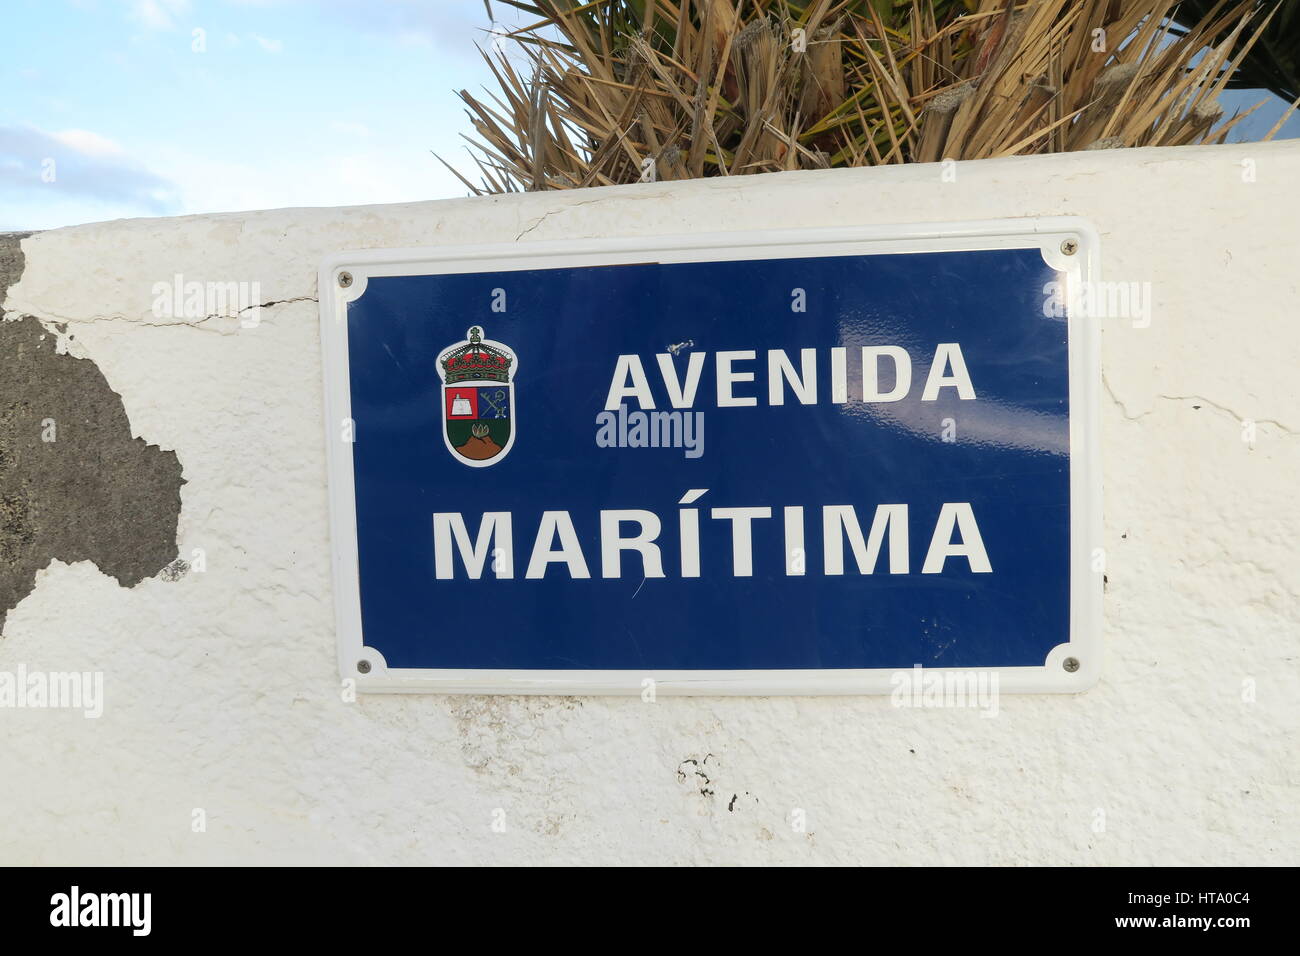 Avenida Maritima, El Golfo, Lanzarote, Canary Islands Stock Photo